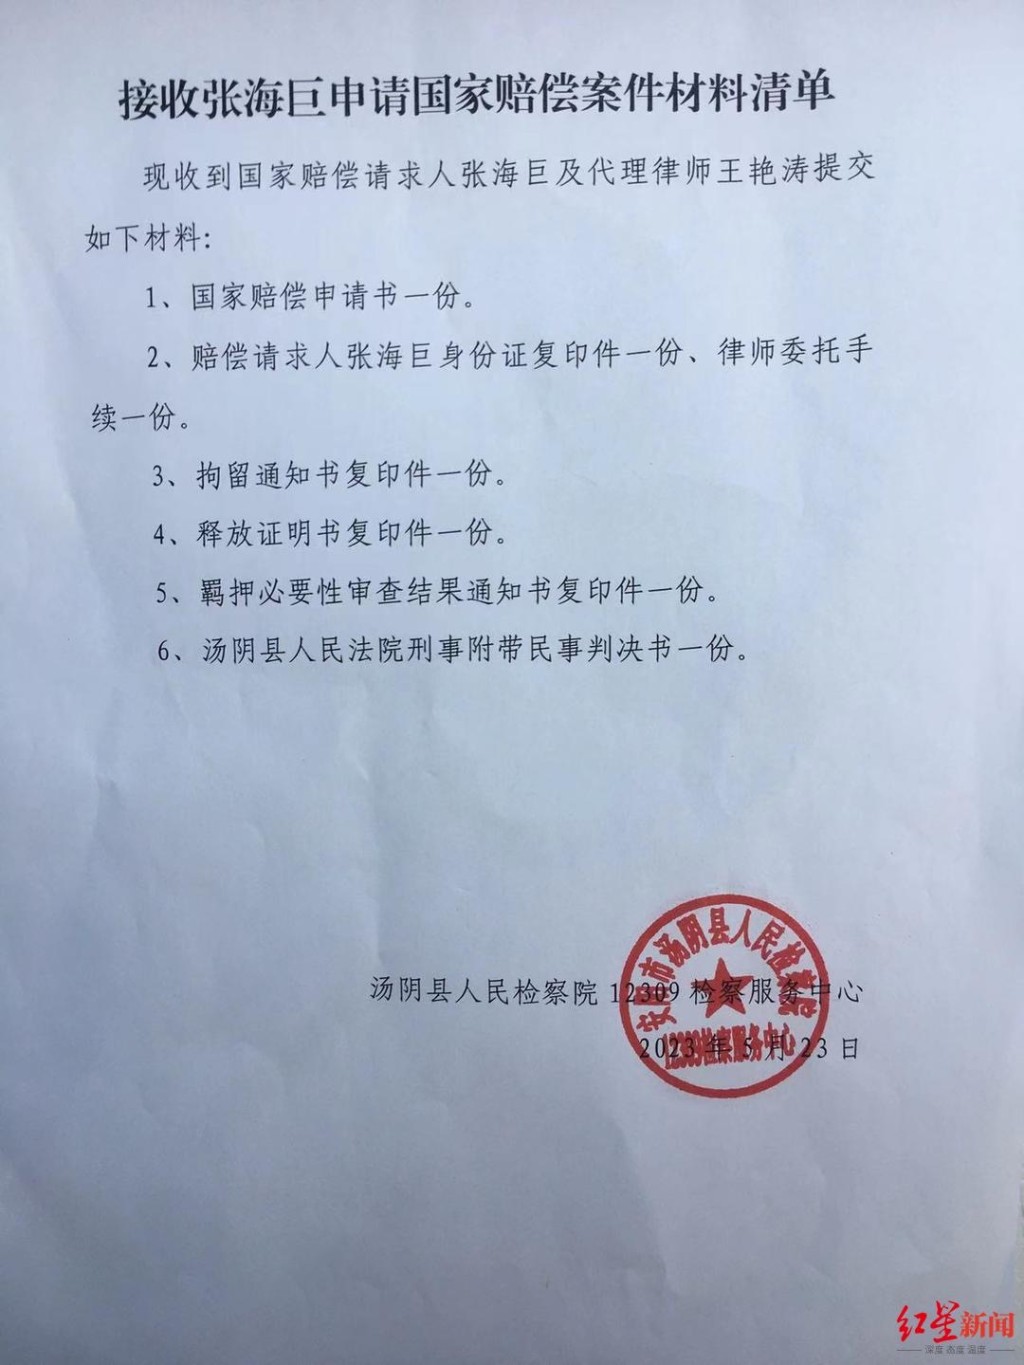 张海巨要求法院道歉、赔偿及向检察官追责。